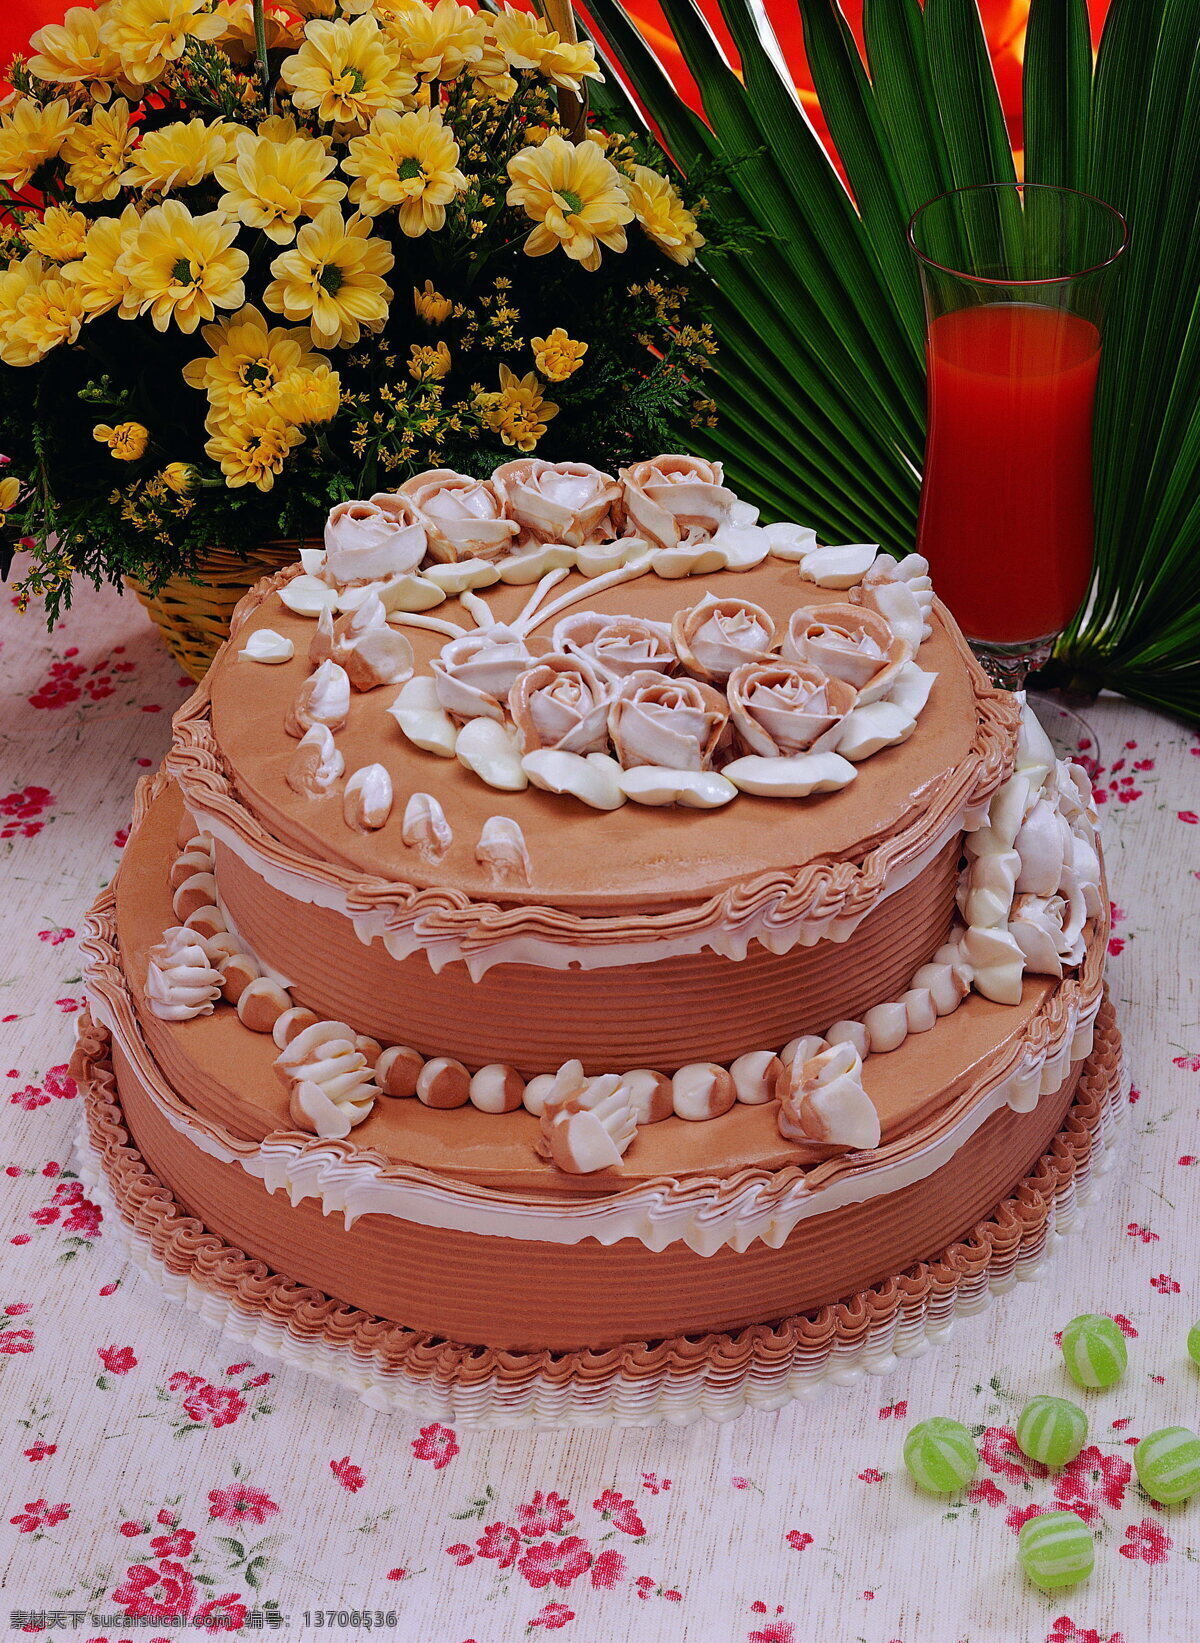 多层蛋糕 双层蛋糕 糕点 点心 甜点 甜品 花卉蛋糕 奶油蛋糕 蛋糕 奶油 美味 美食 食物 鲜花 插花 餐桌 餐饮美食 冷食 西餐美食